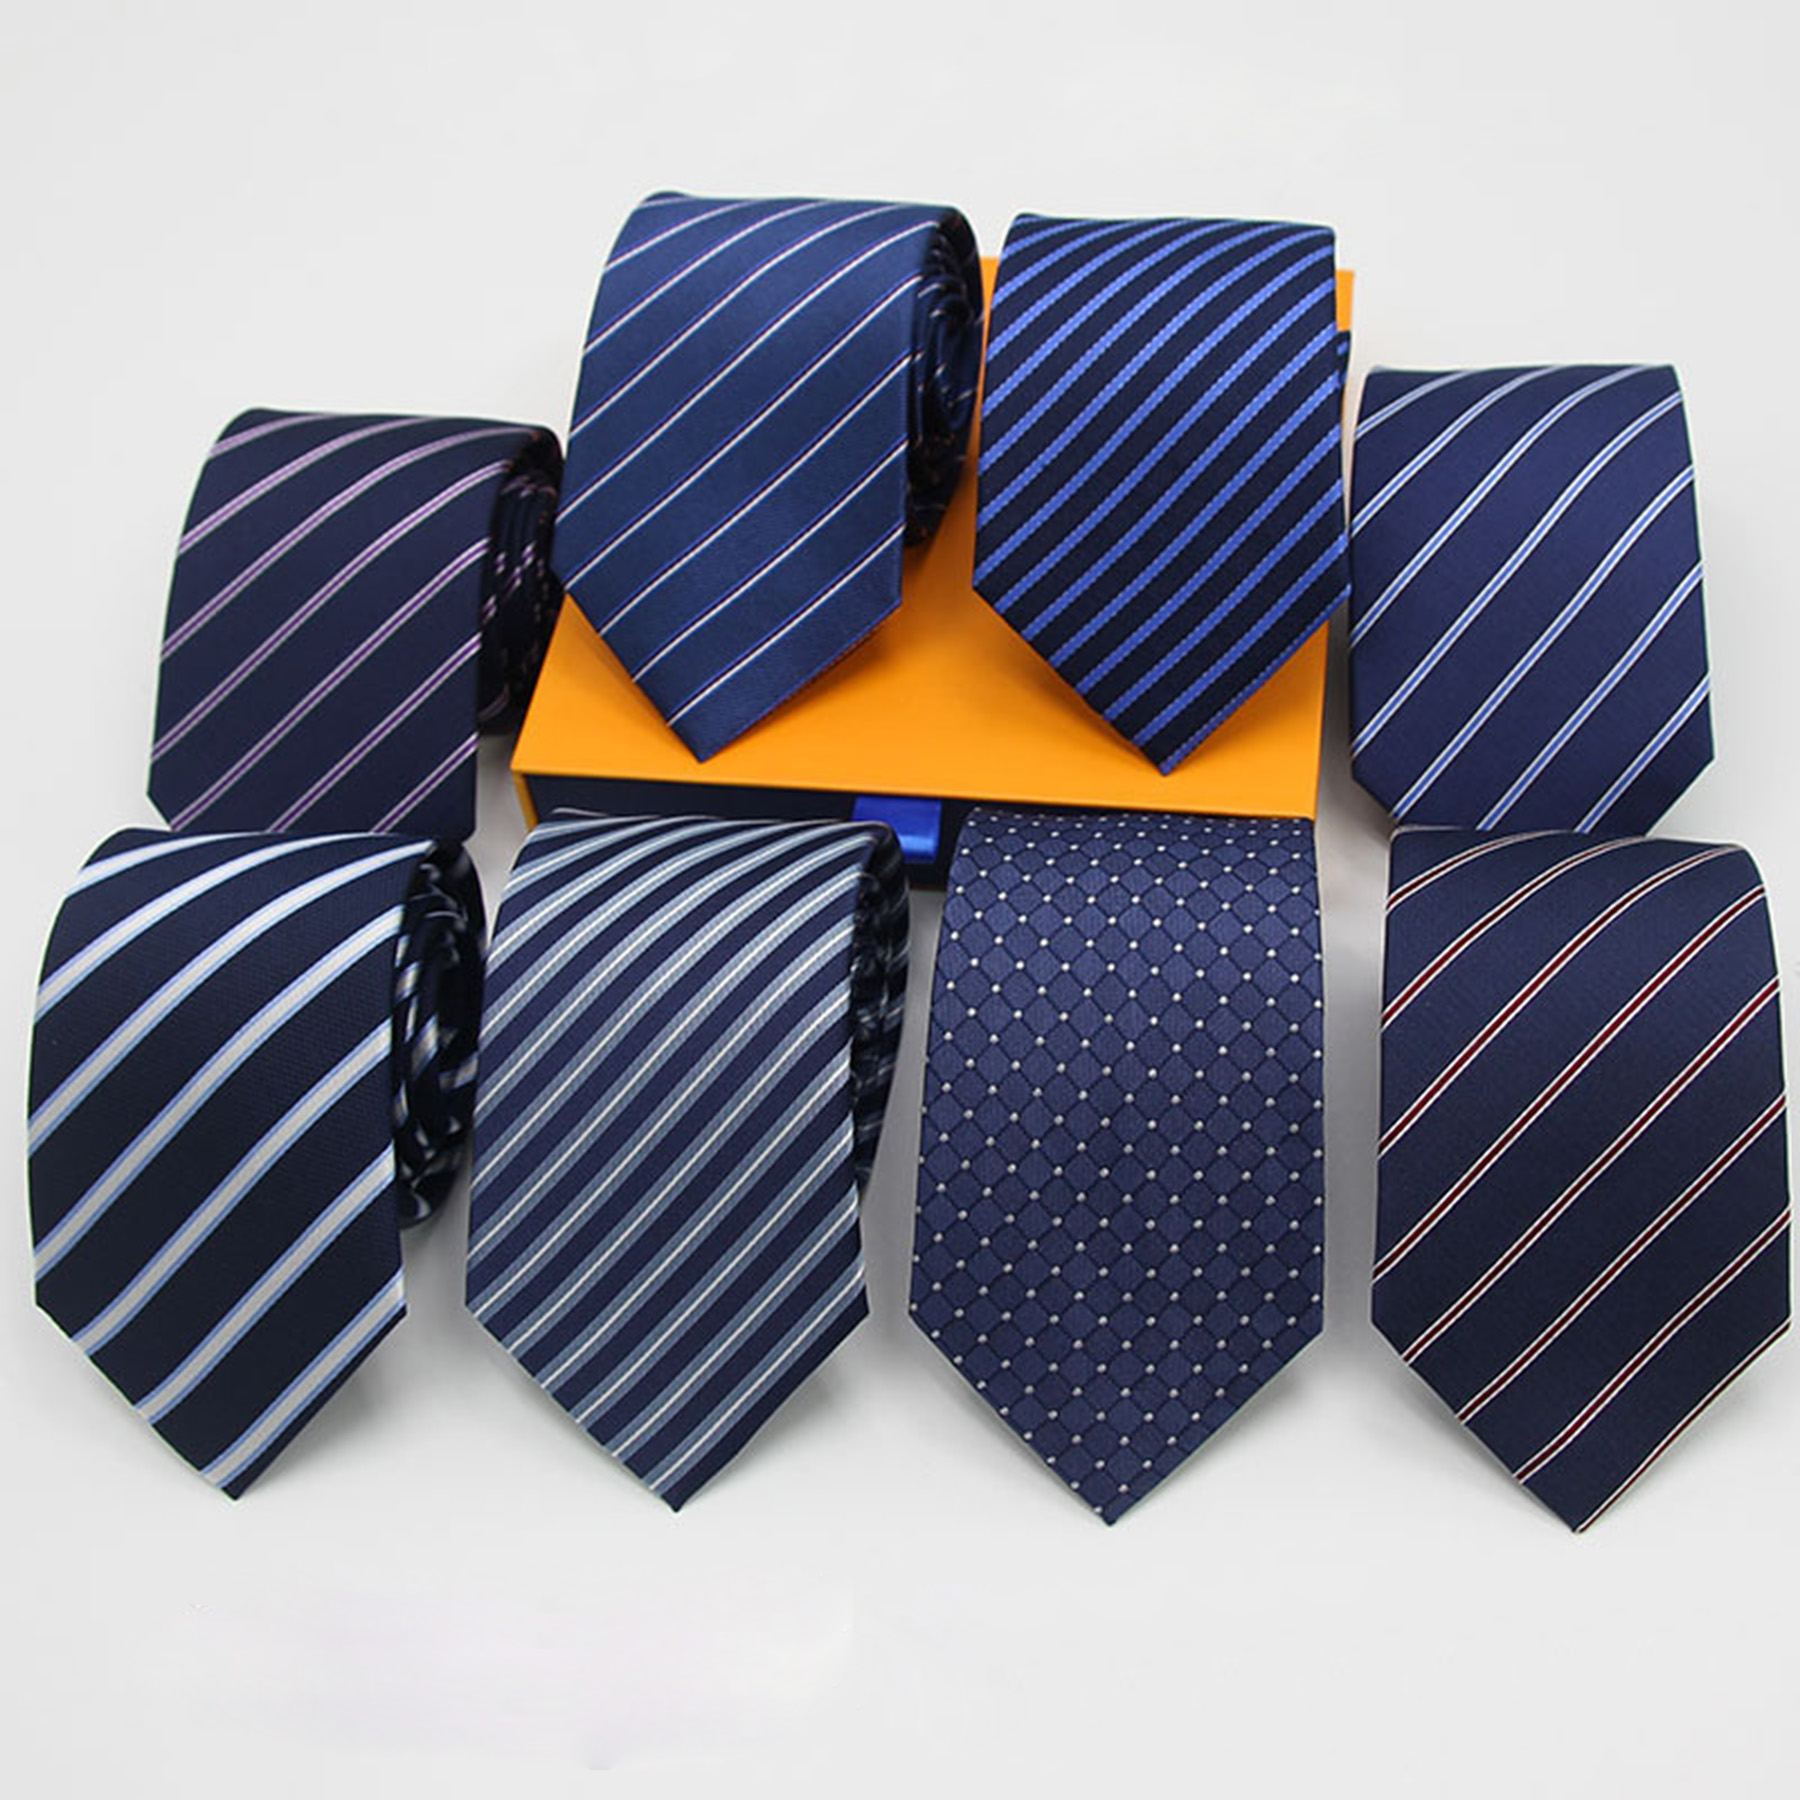 Plaid Classic Men's Necktie 